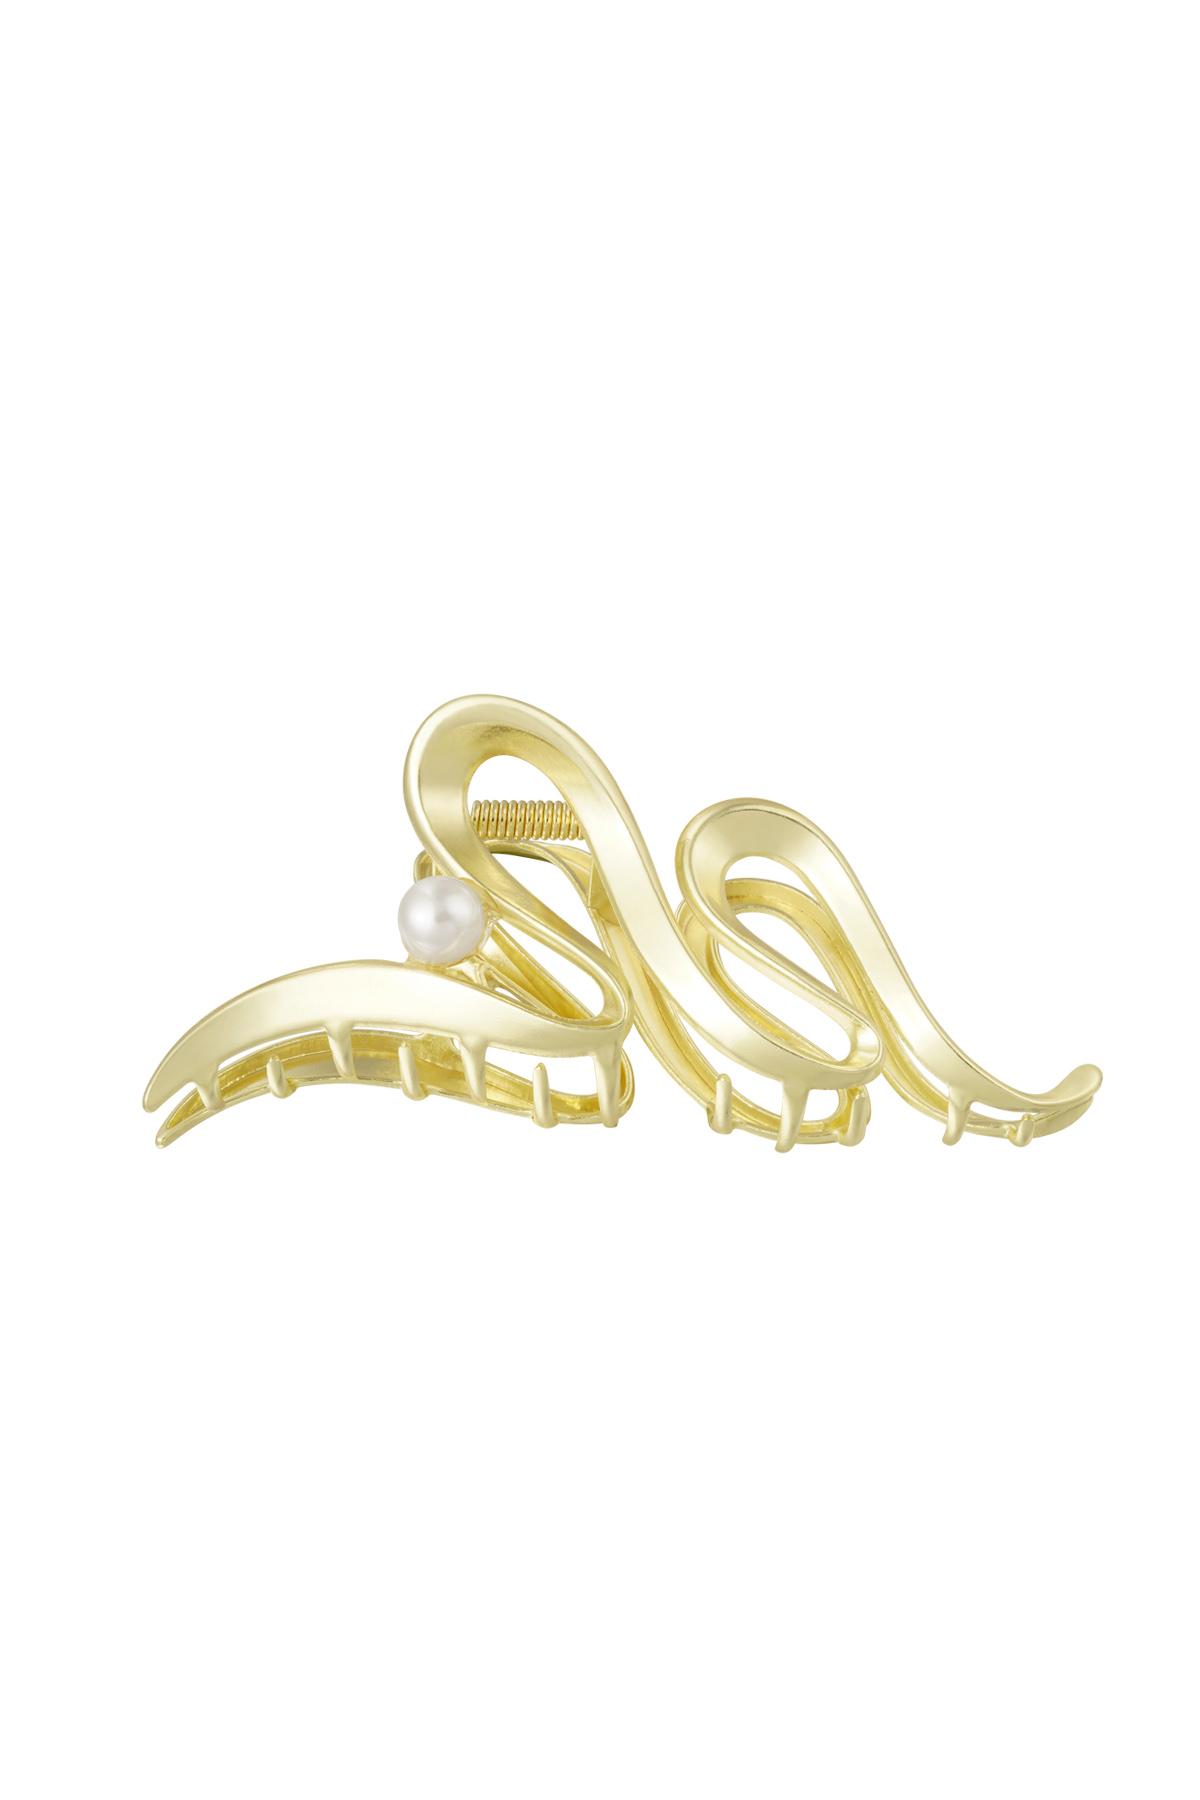 Haarspange Locke mit Perle - goldfarbenes Metall h5 